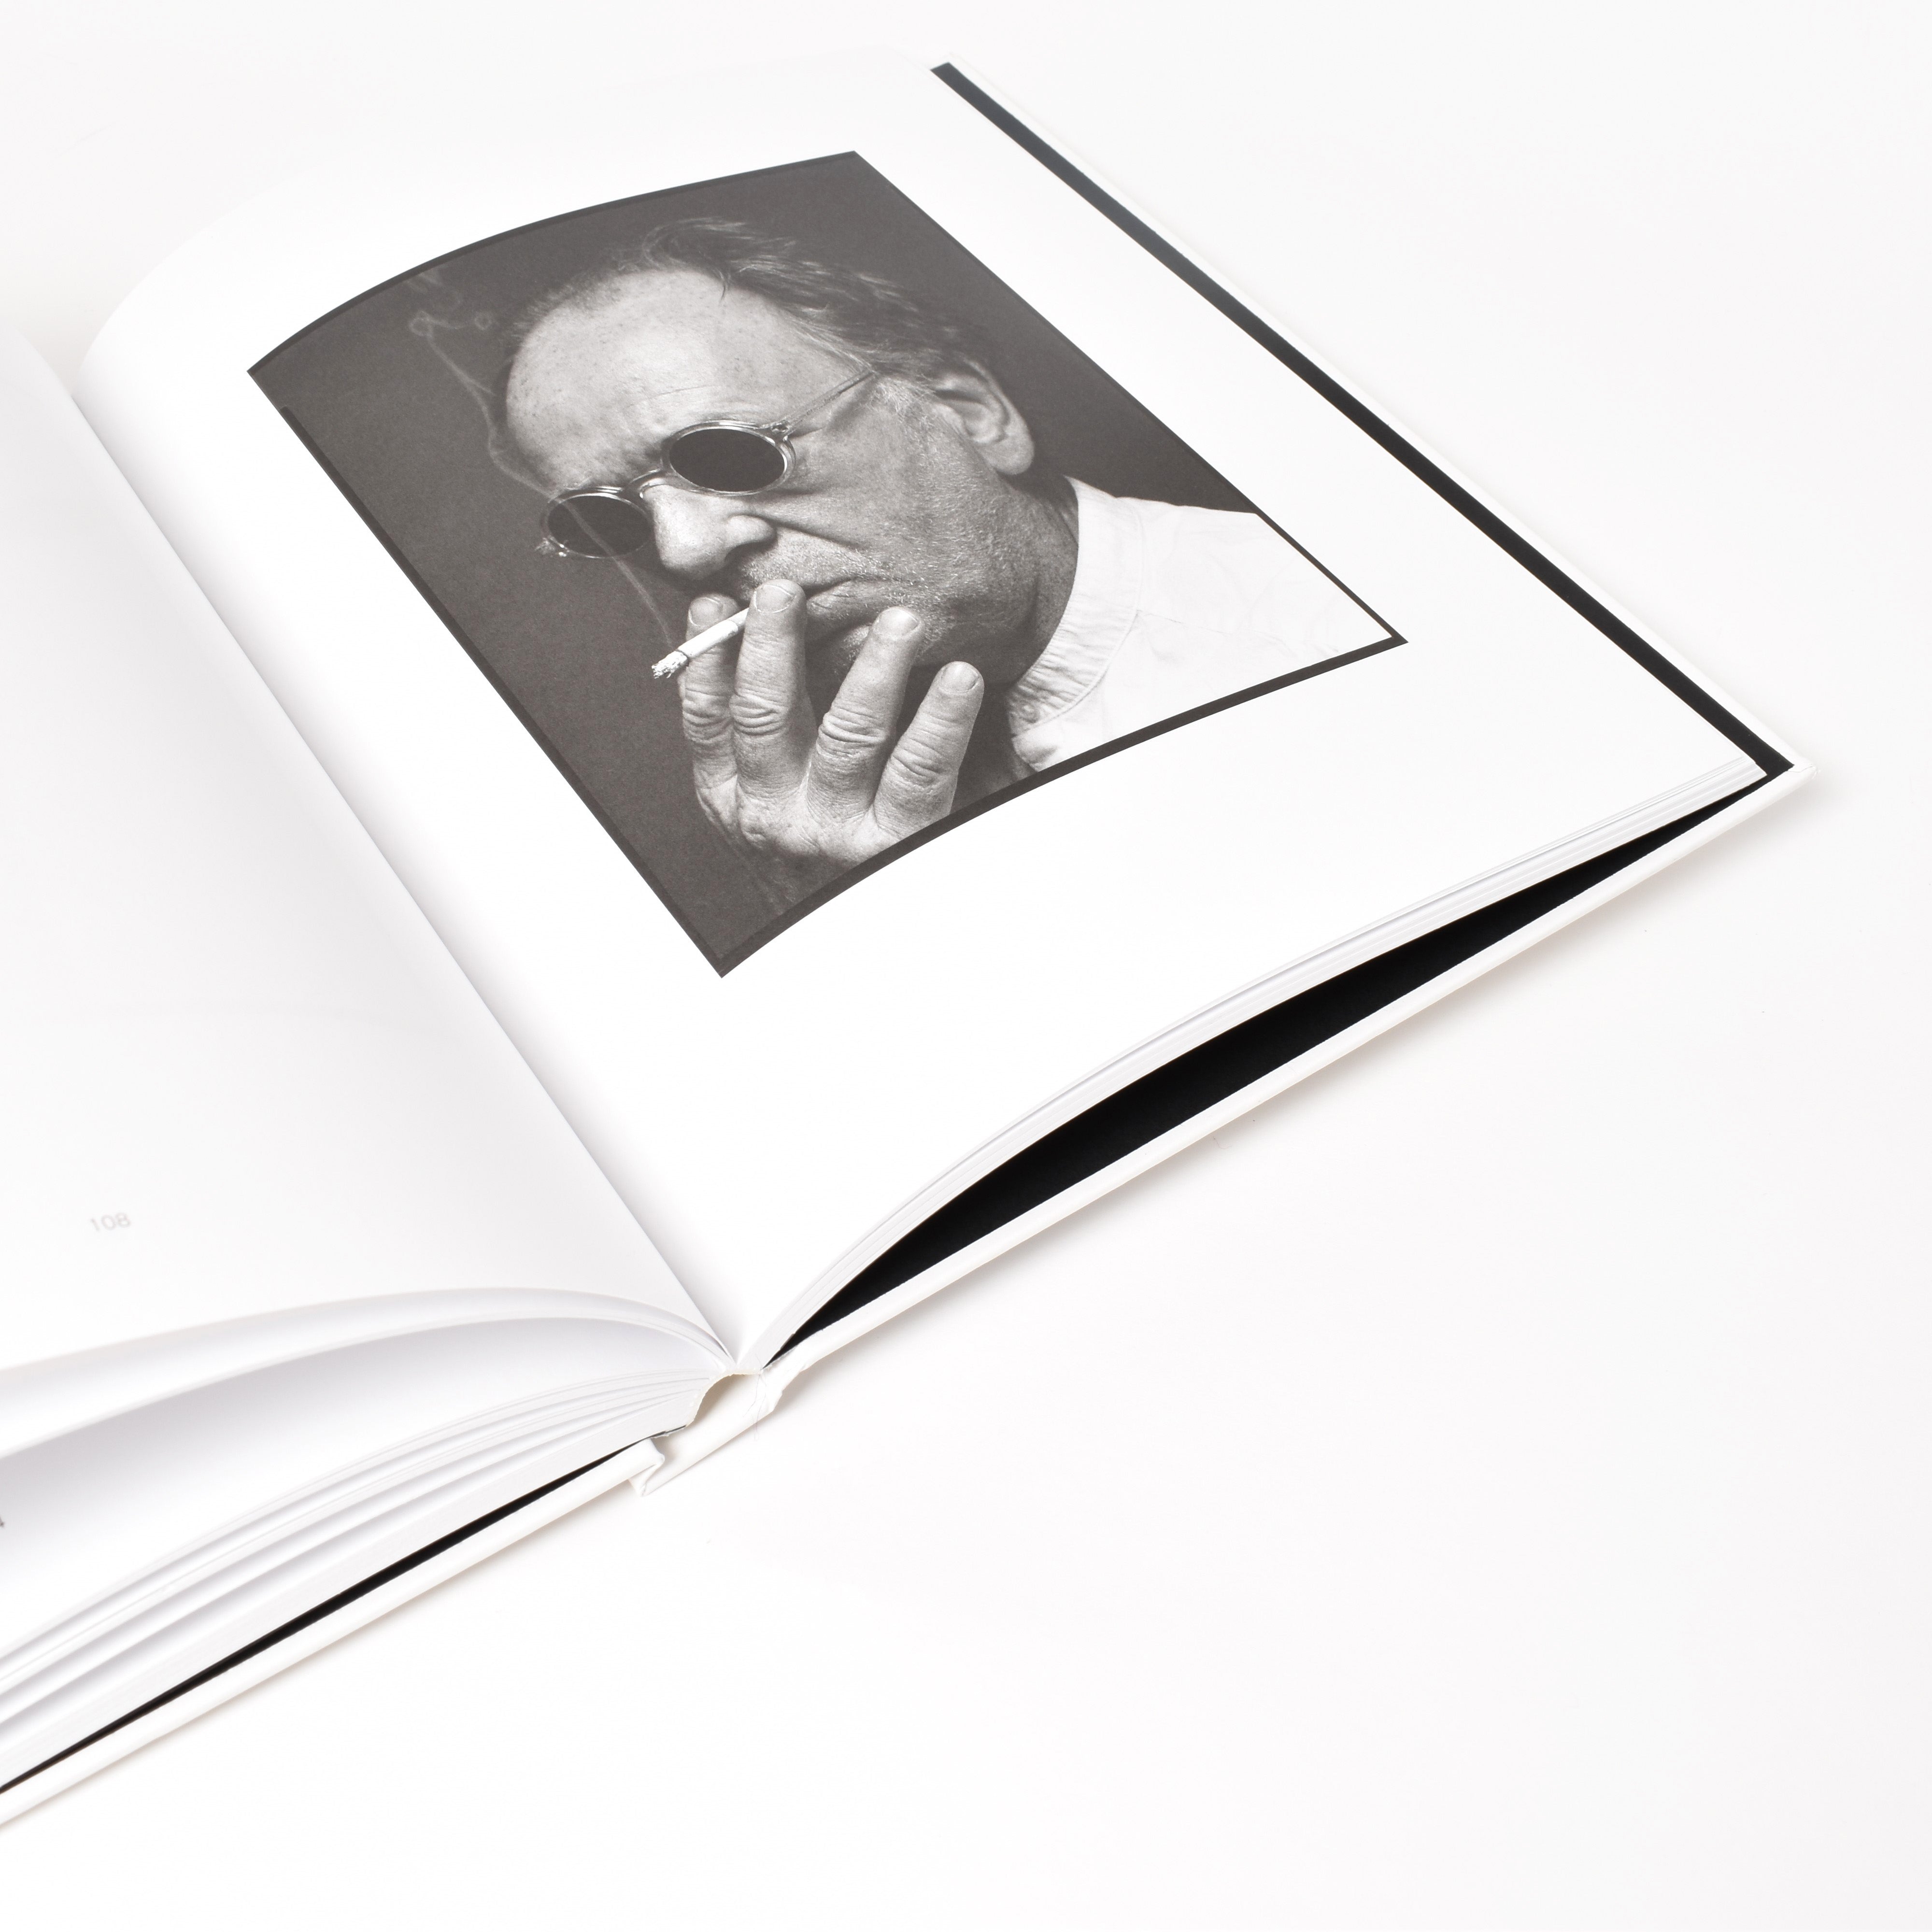 insida i boken dawid - men med svartvitt fotografi av en man som röker